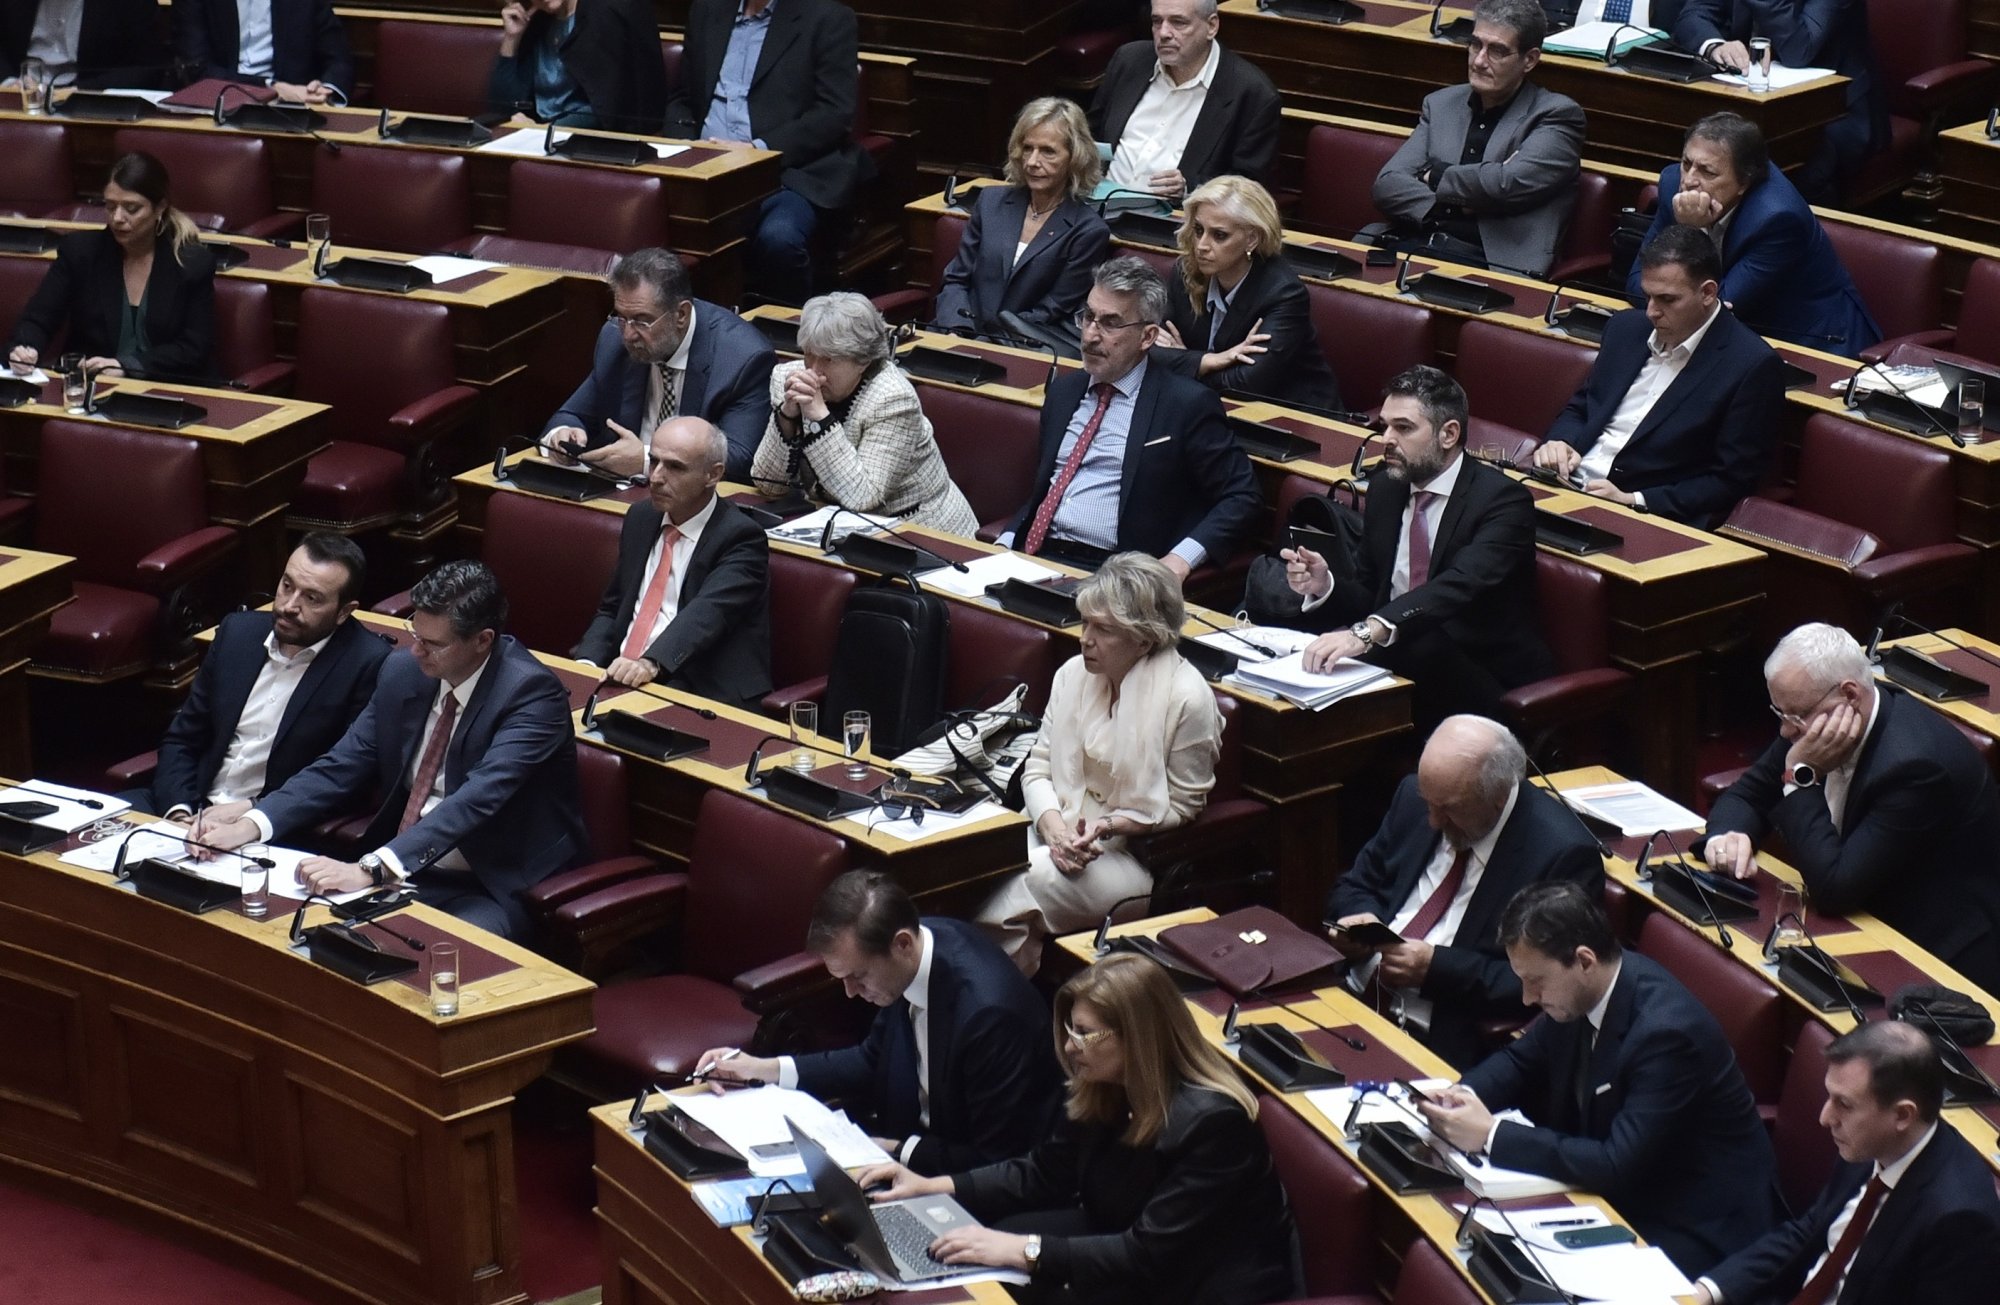 ΣΥΡΙΖΑ: Καταψηφίζει το νομοσχέδιο για τα κόκκινα δάνεια - Καταθέτει πρόταση νόμου για την πρώτη κατοικία